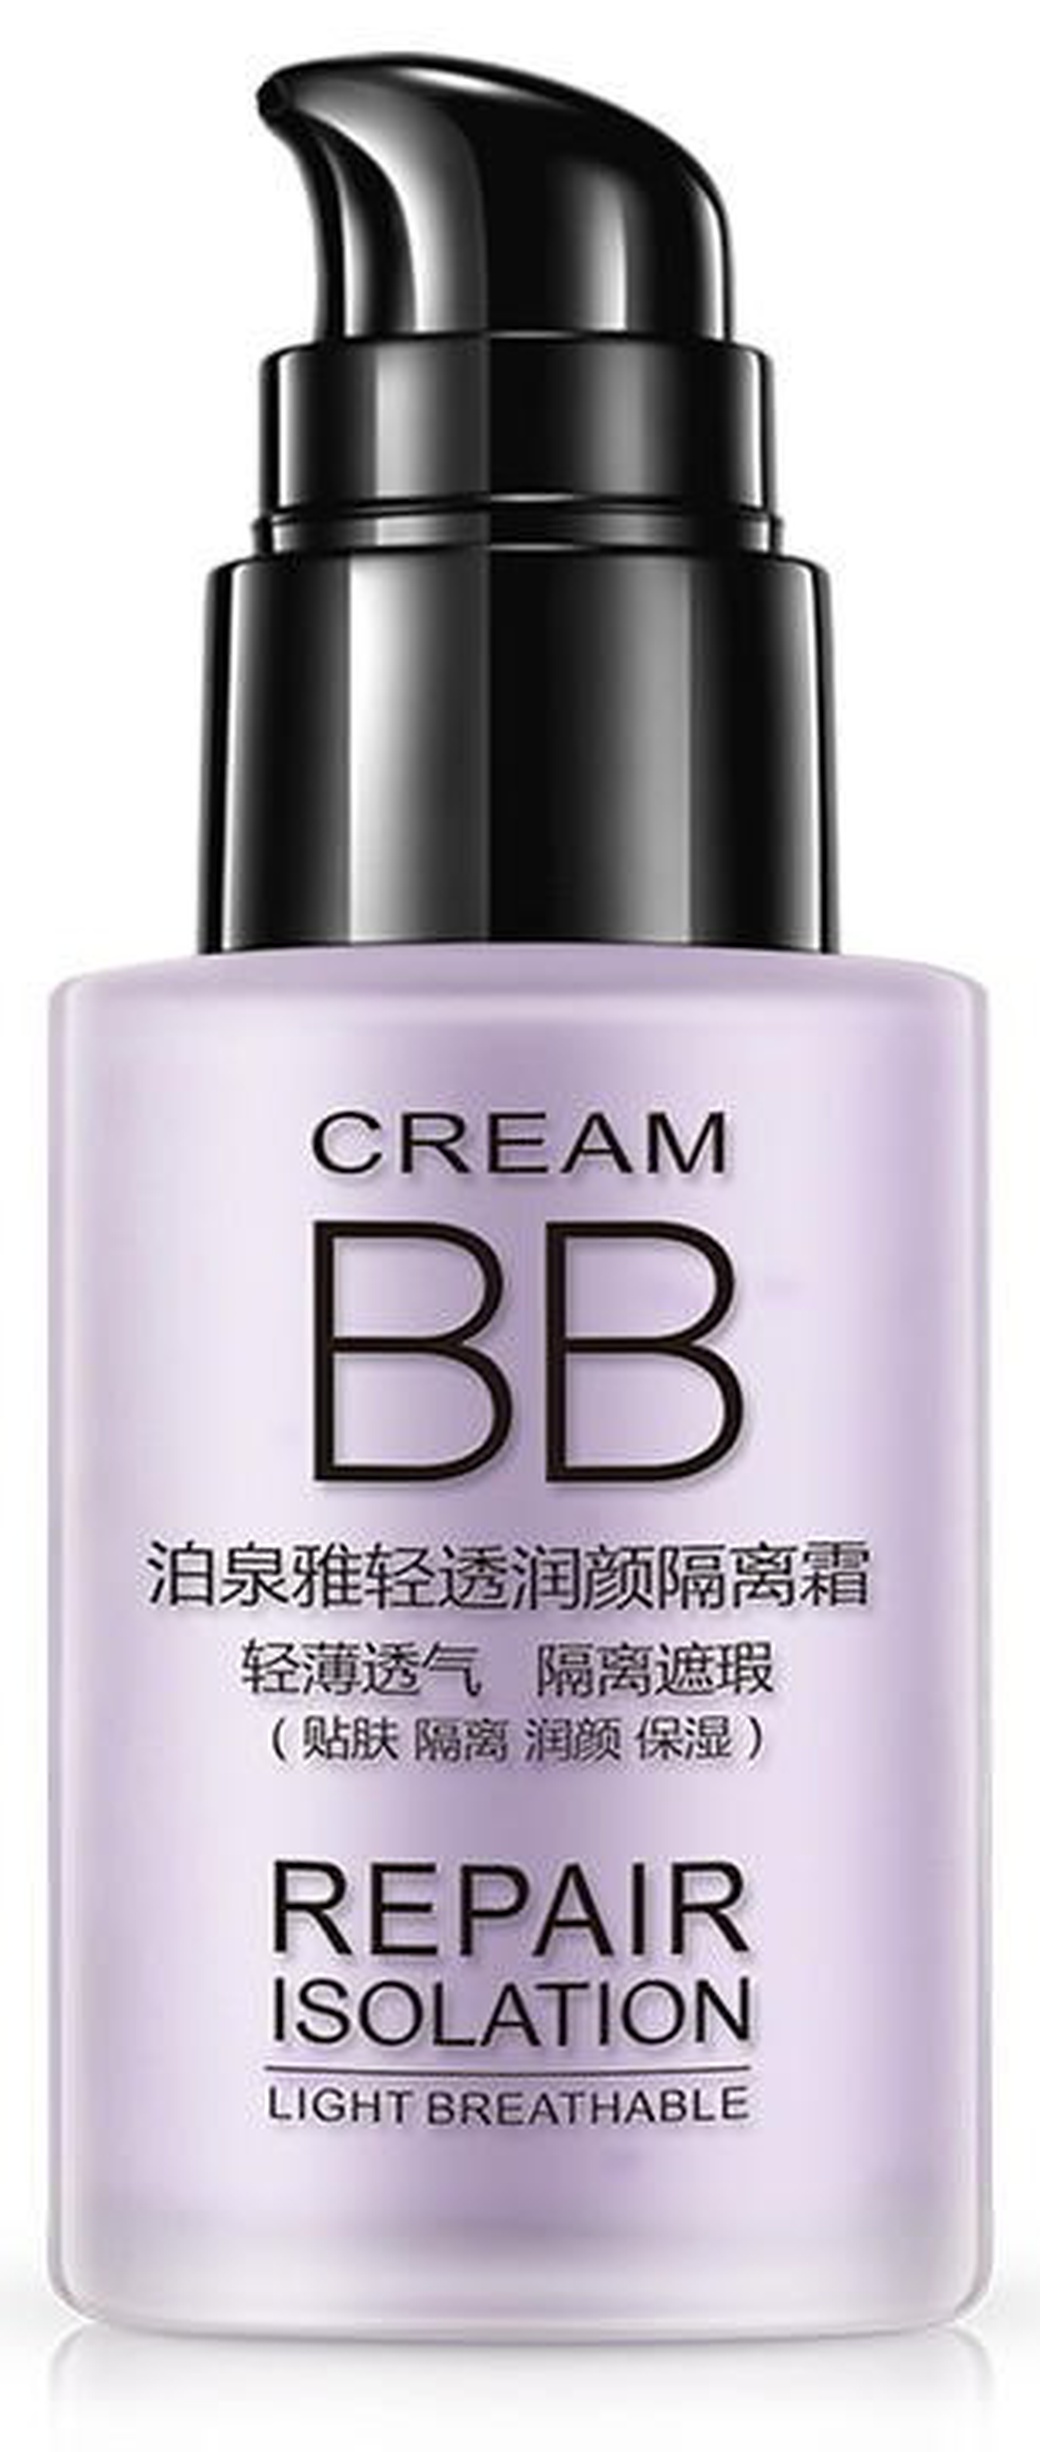 Увлажняющая легкая база под макияж Bioaqua BB крем, 04 - фиолетовый фото